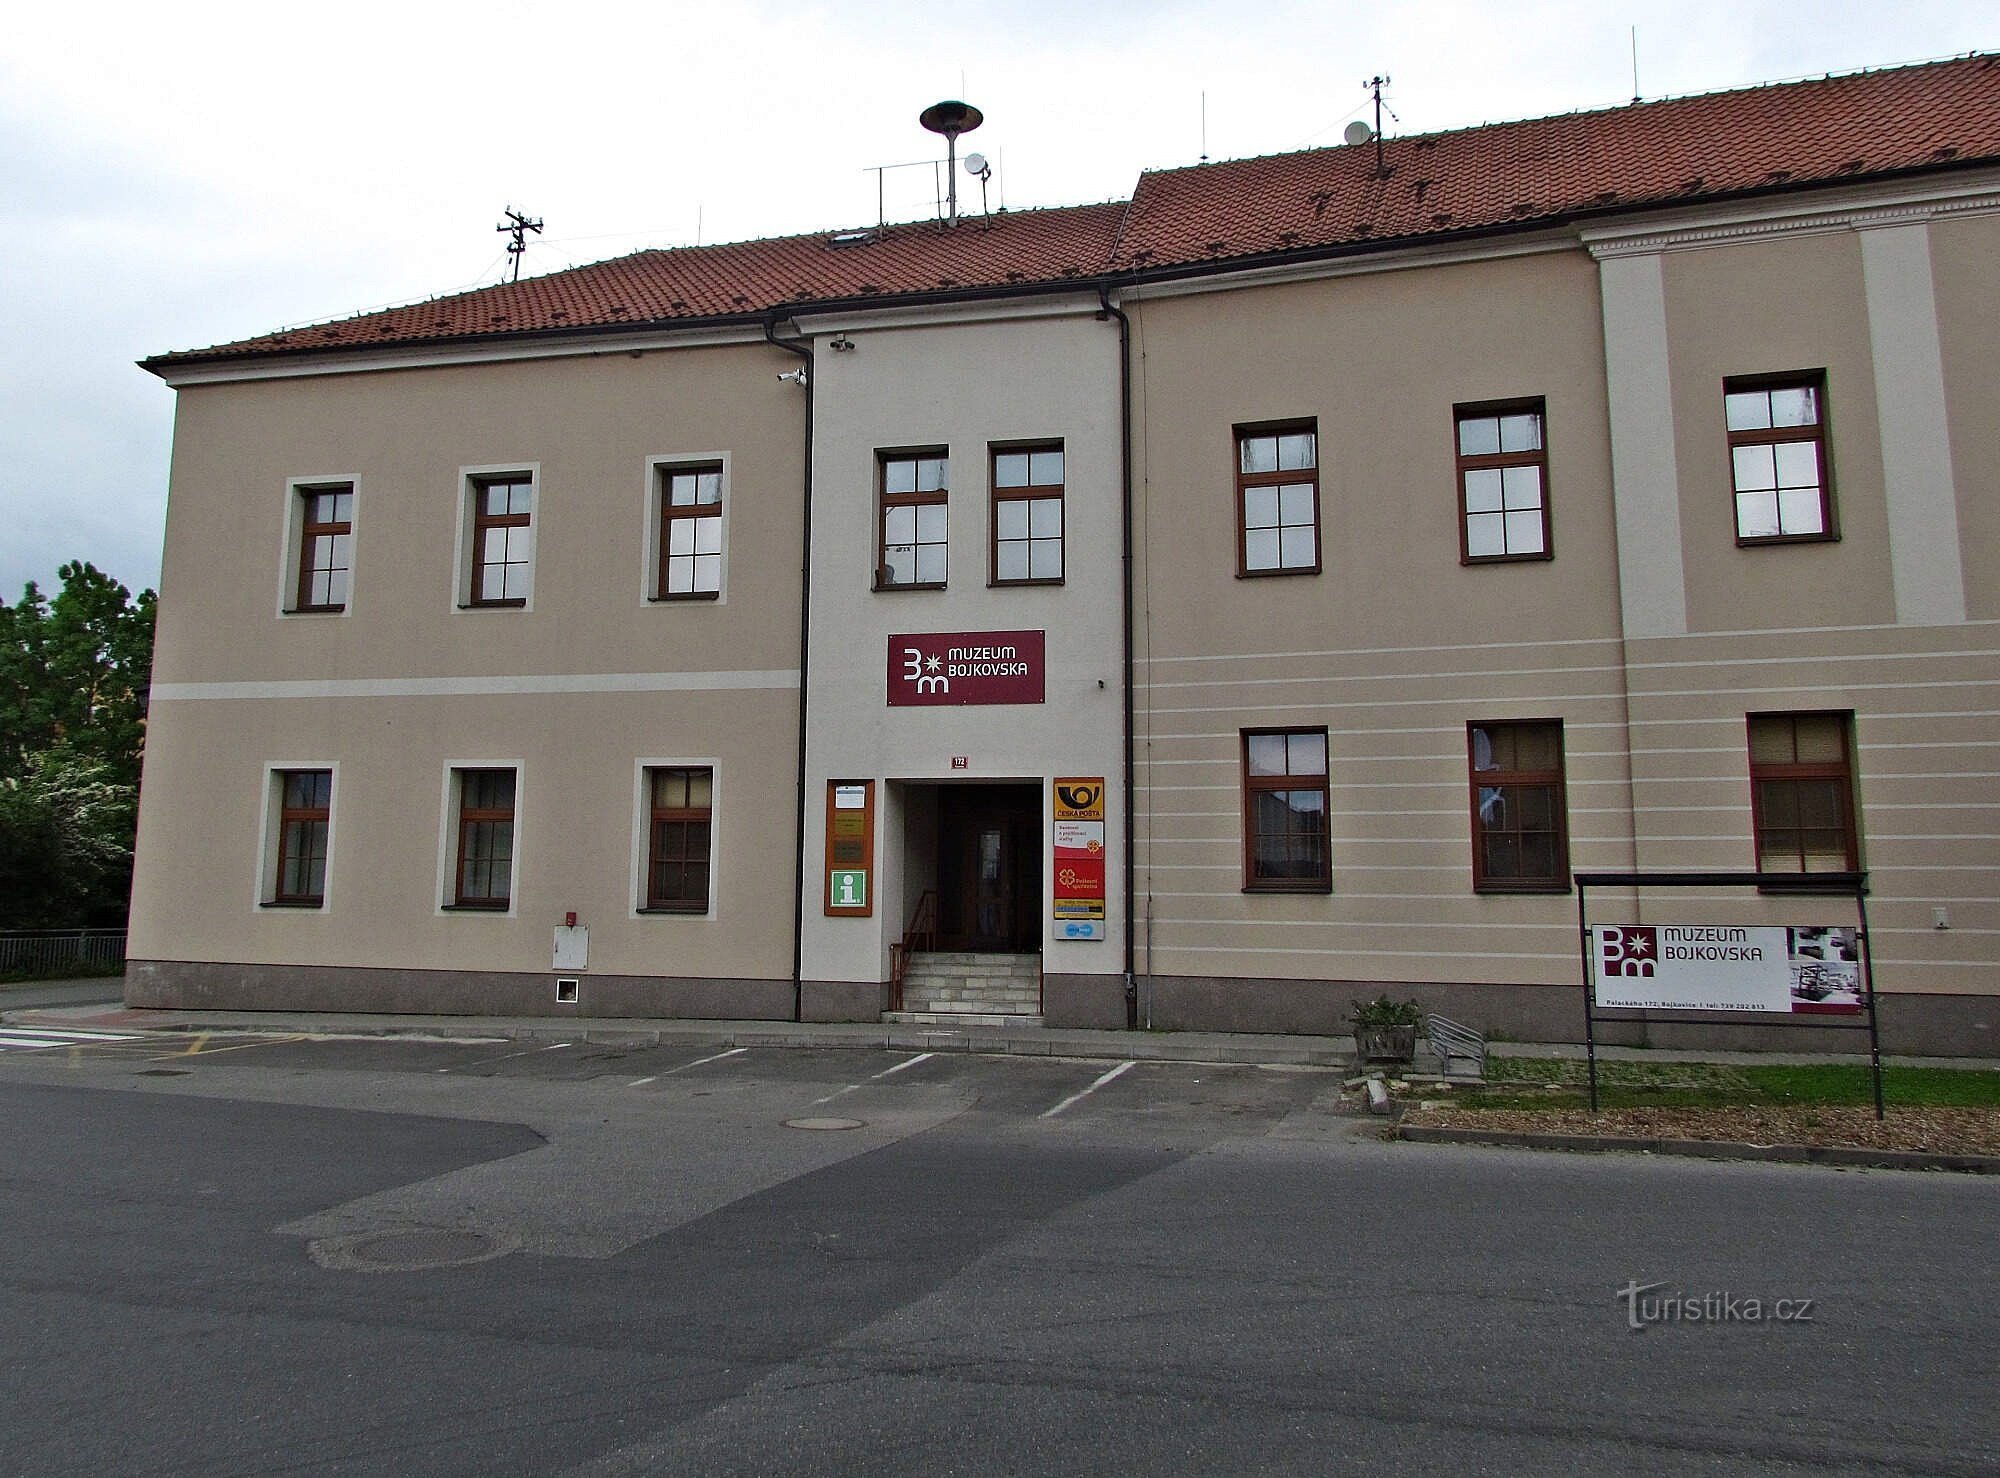 Bejárás a Bojkovska Múzeumba